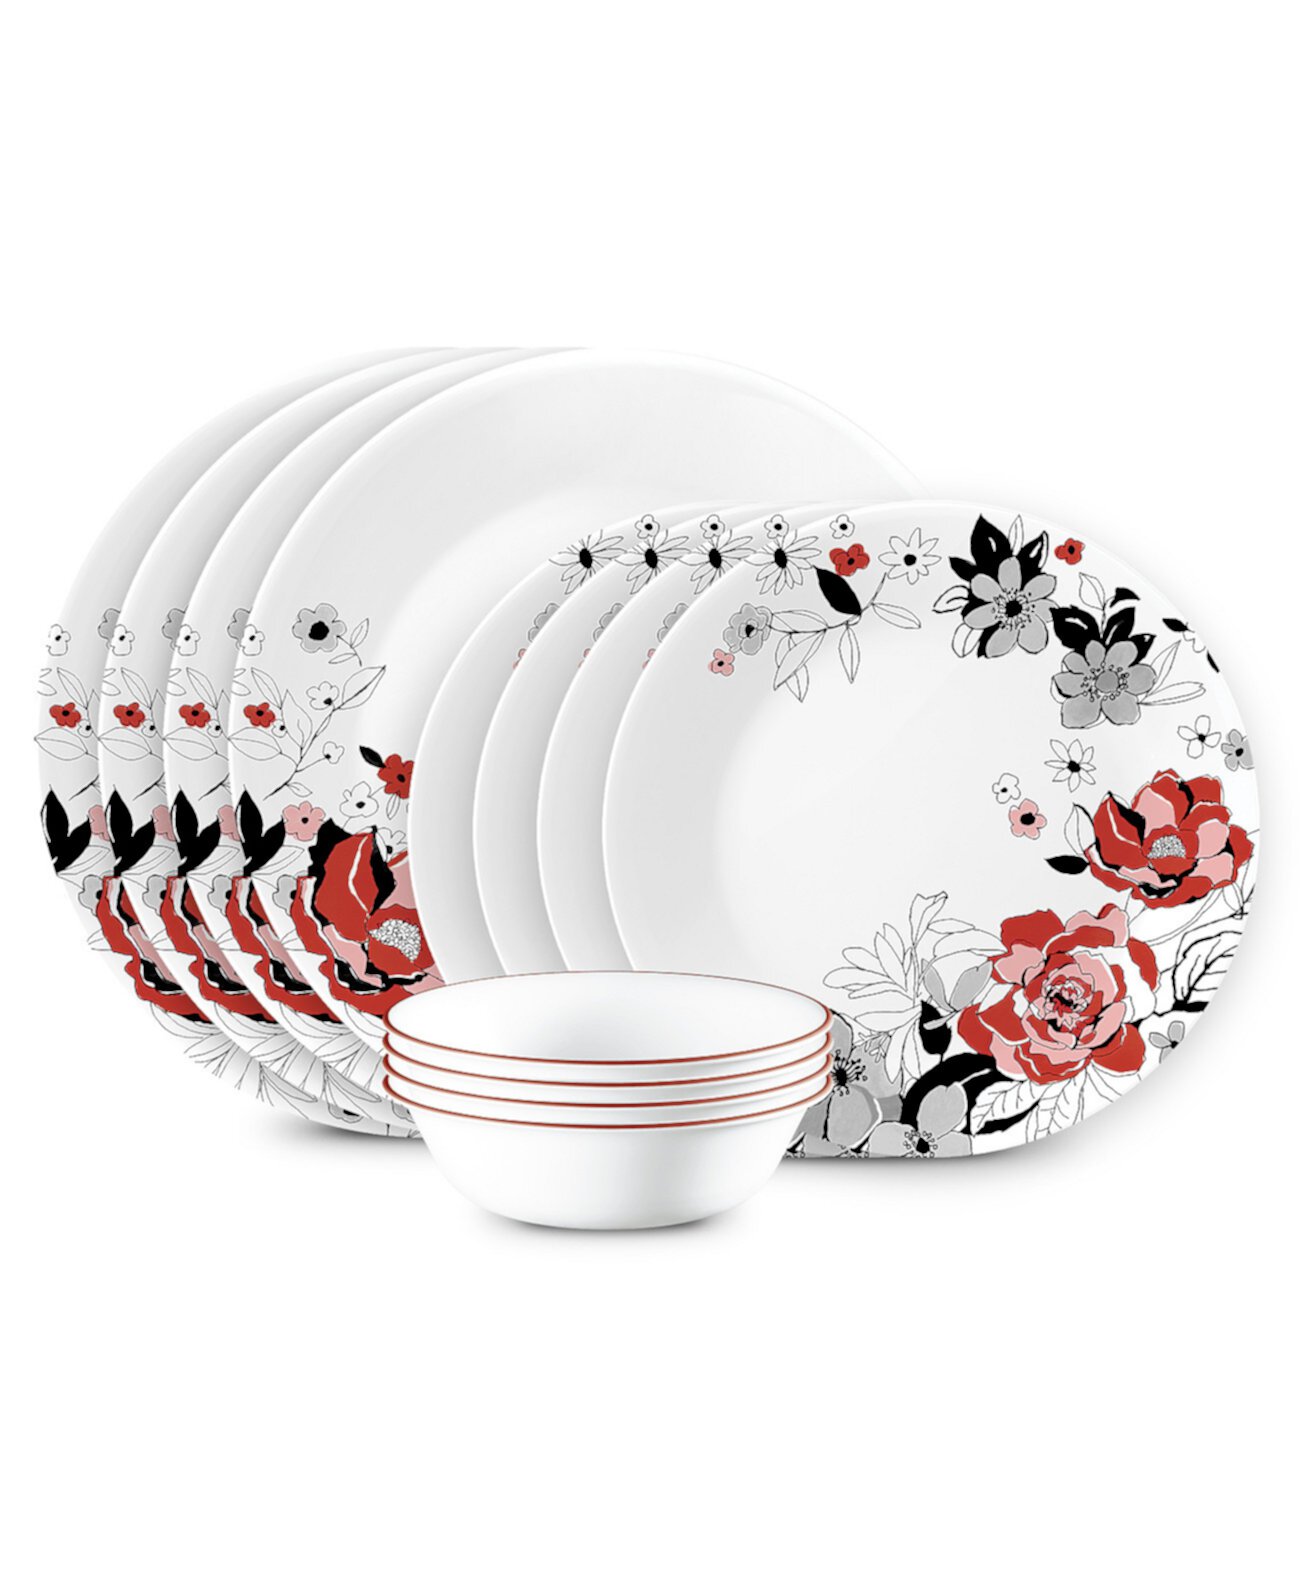 Набор столовой посуды Vitrelle Chelsea Rose, 12 предметов, сервиз на 4 персоны Corelle